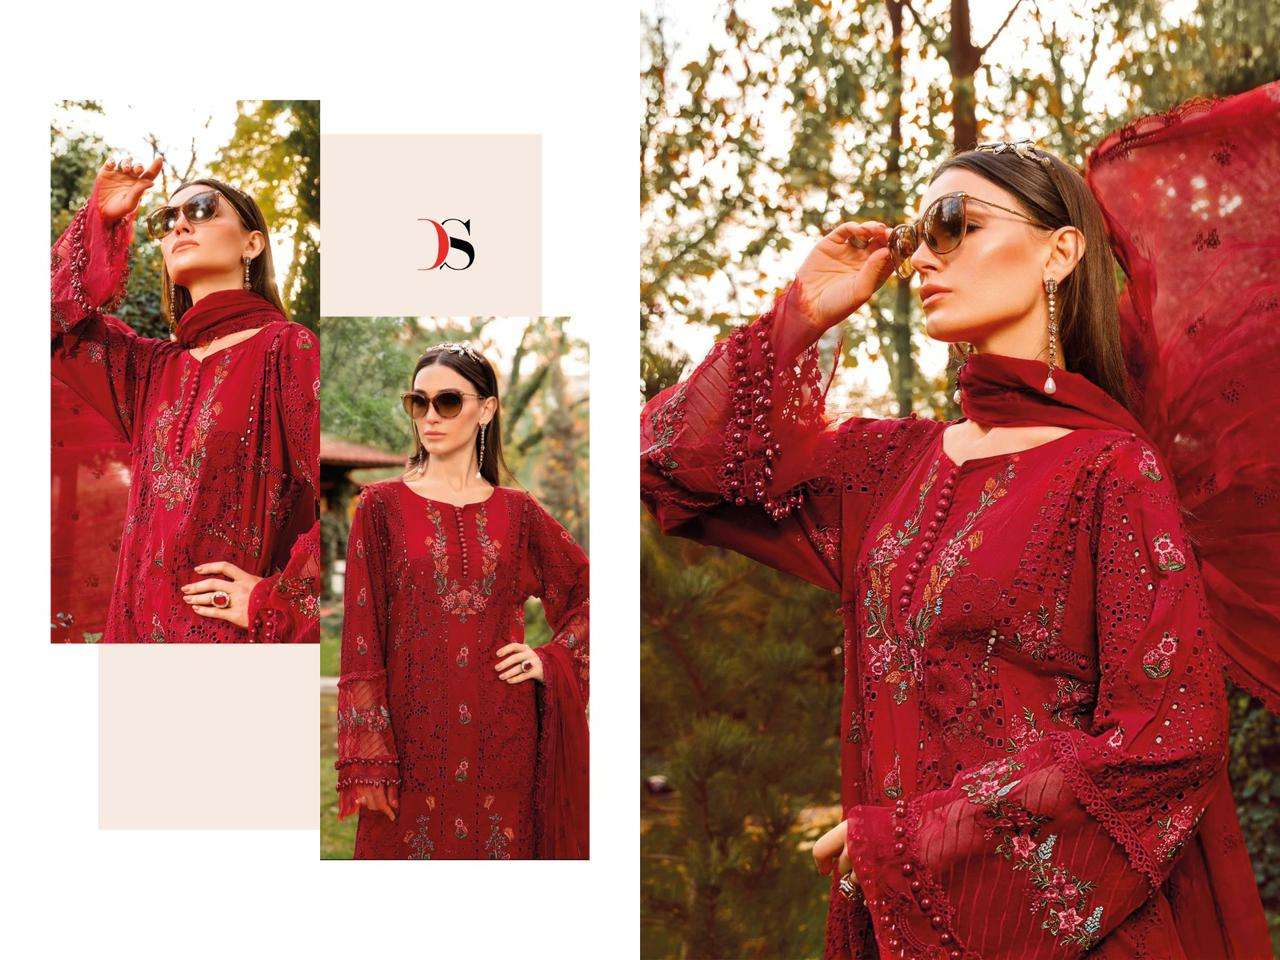 deepsy suits maria b lawn vouage a luxe 3041-3048 series exclusive designer pakistani salwar suits catalogue wholesaler surat 